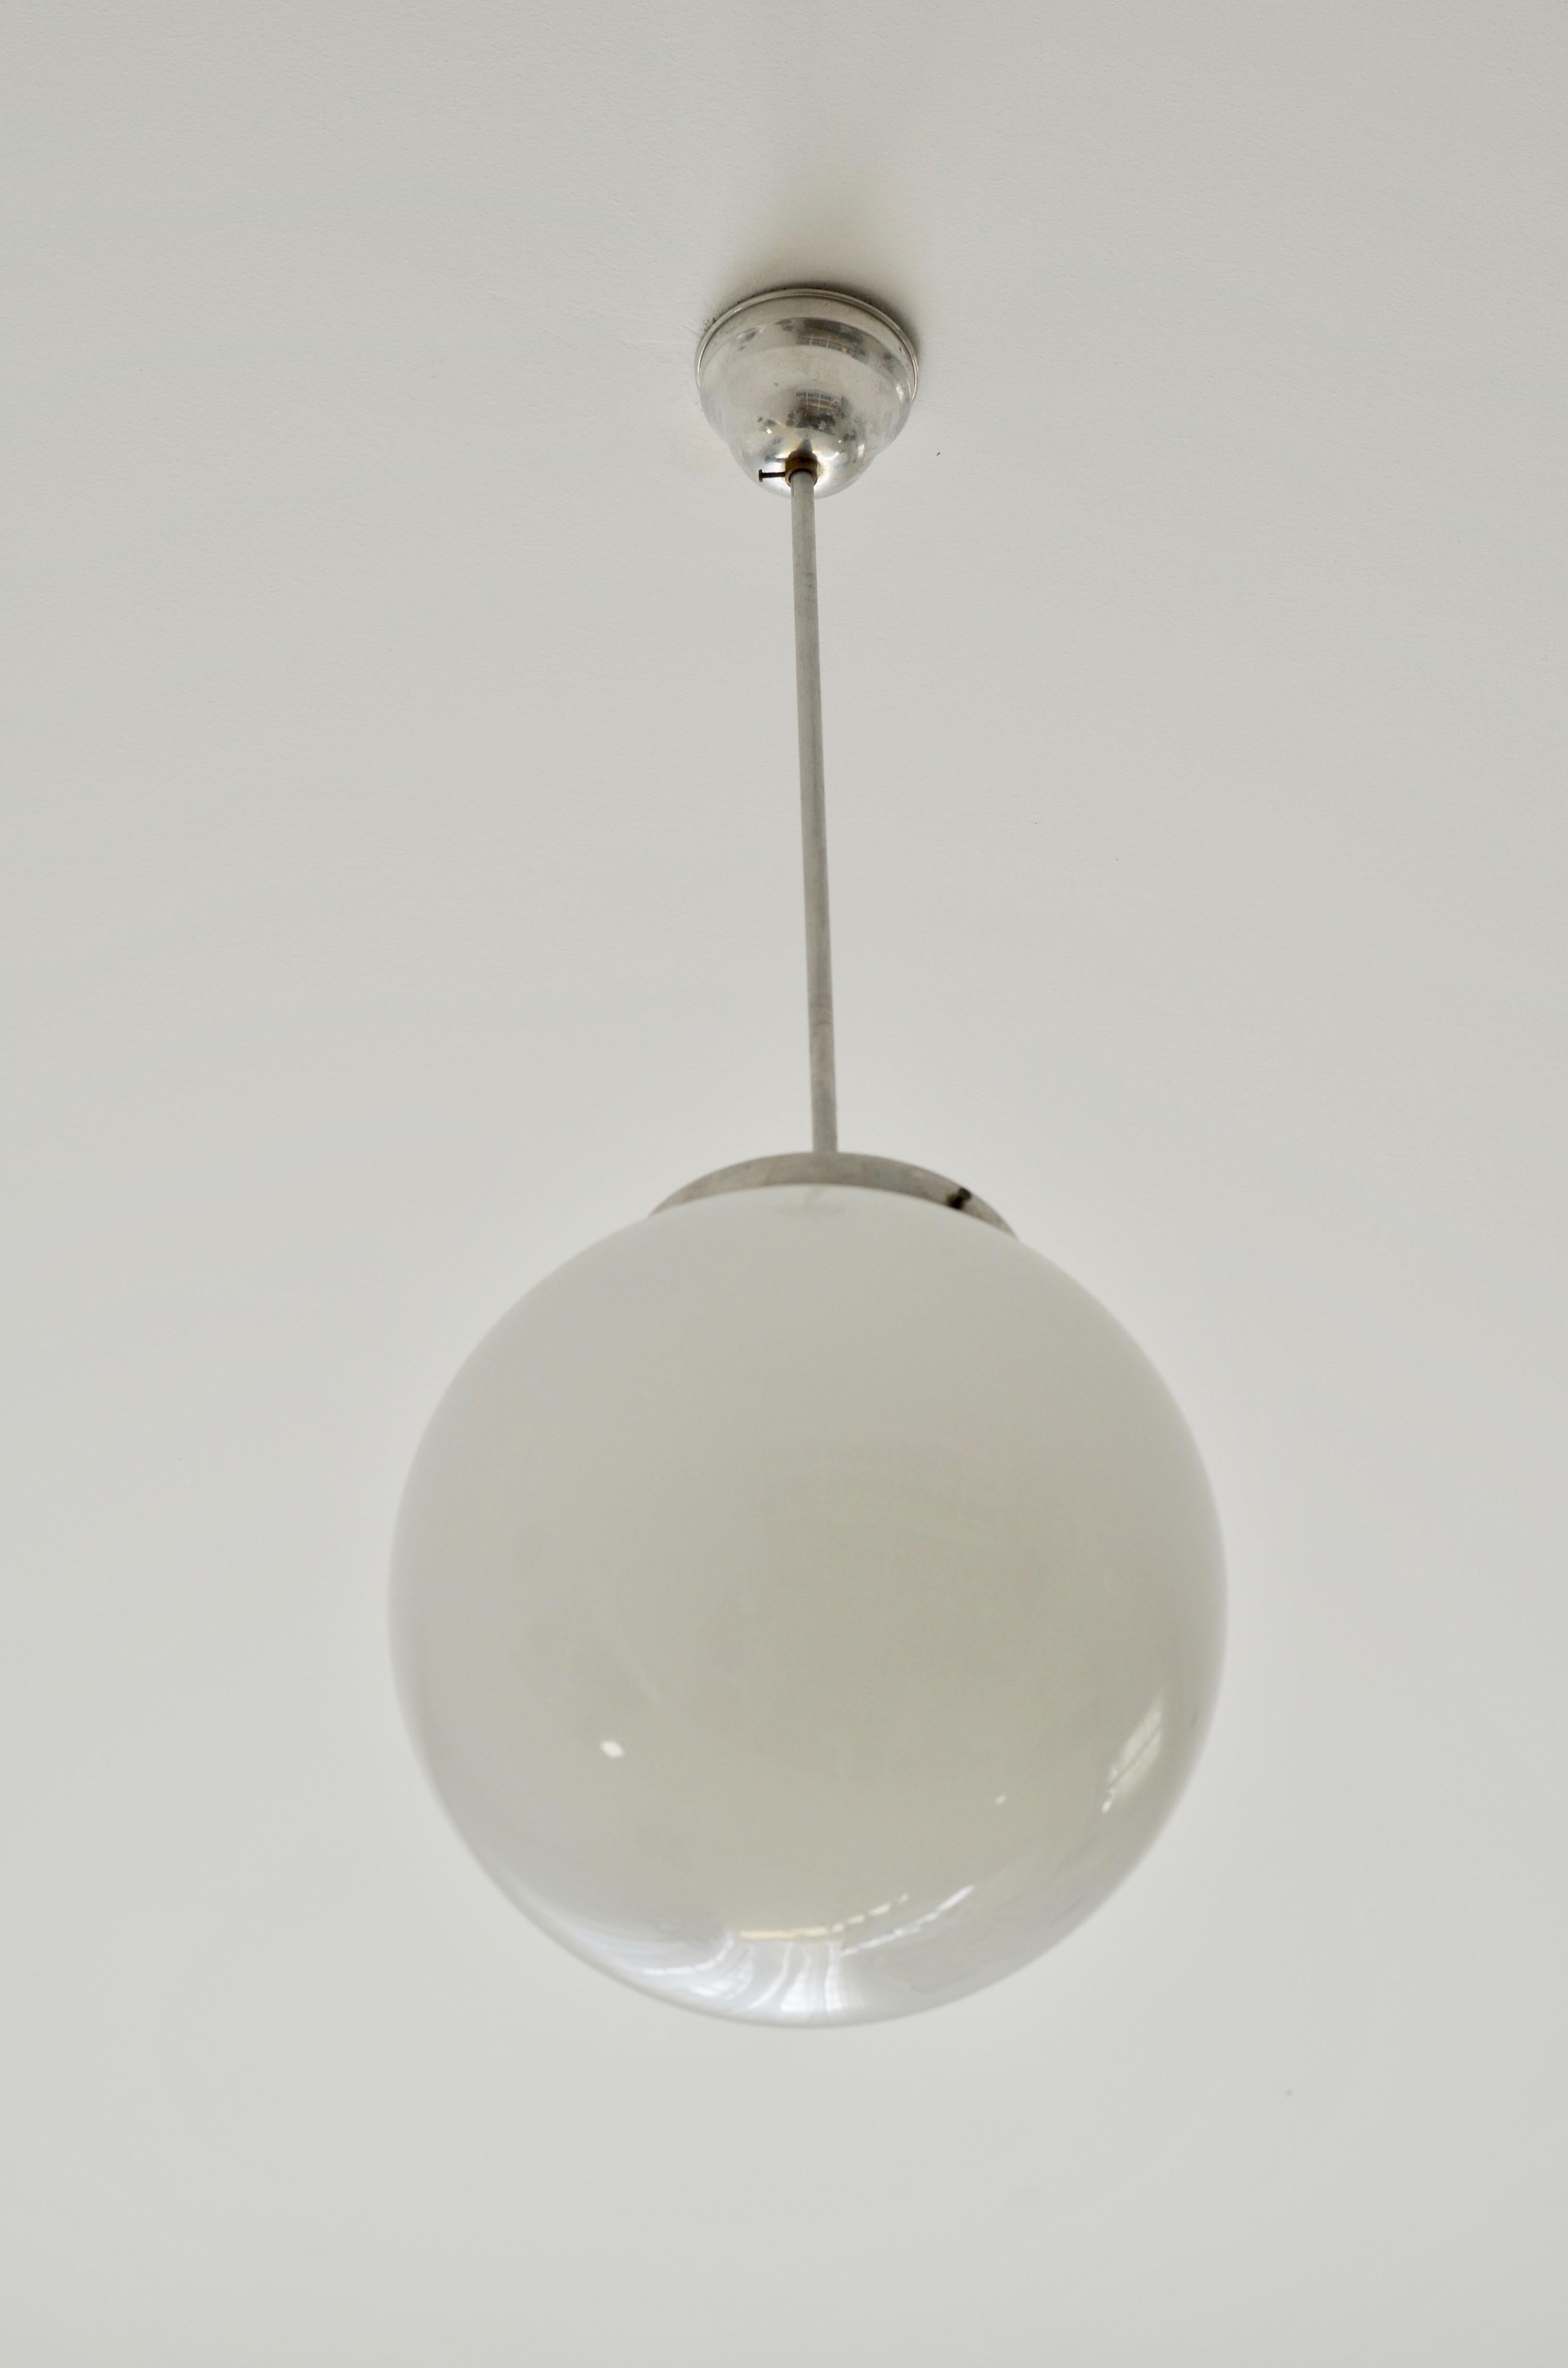 Bauhaus Style Pendelleuchte

Produzent: EMI Poljčane, Slowenien, Jugoslawien

Zeitraum der Produktion: 1950s

MATERIAL: Opalglas, Aluminium

Durchmesser: 29cm